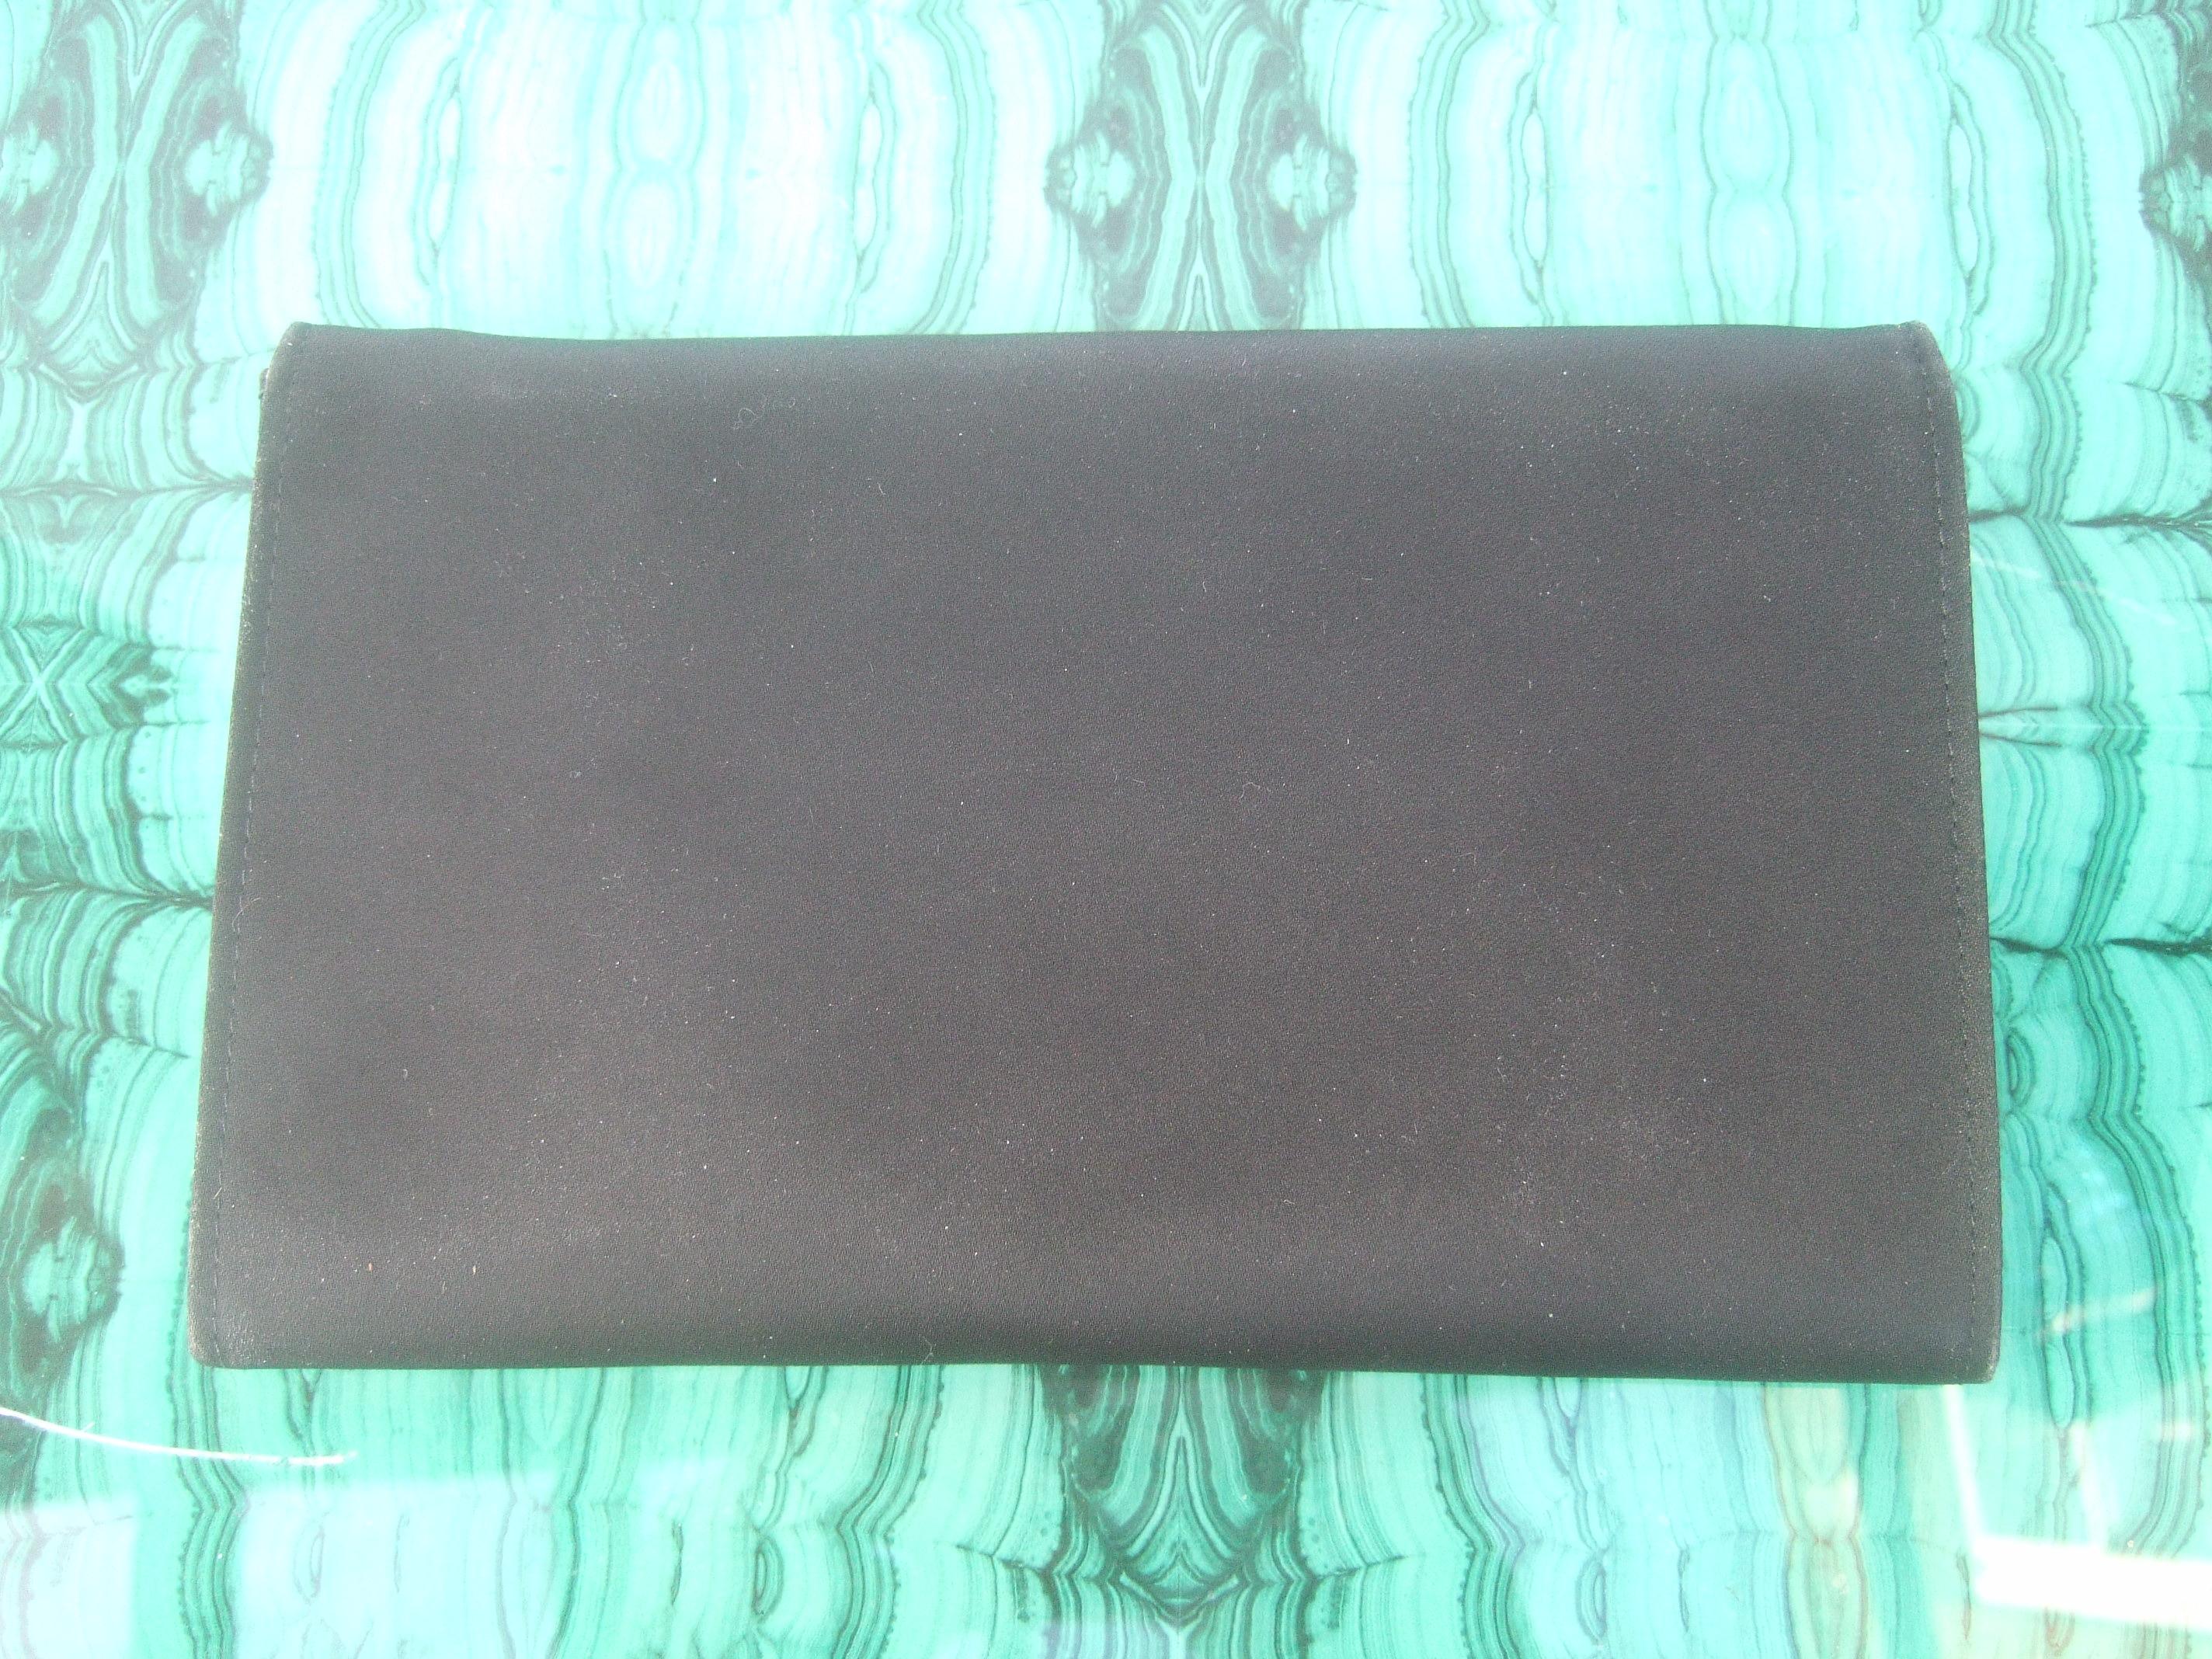 Yves Saint Laurent Chic Black Satin Clutch Bag c 1980s 1